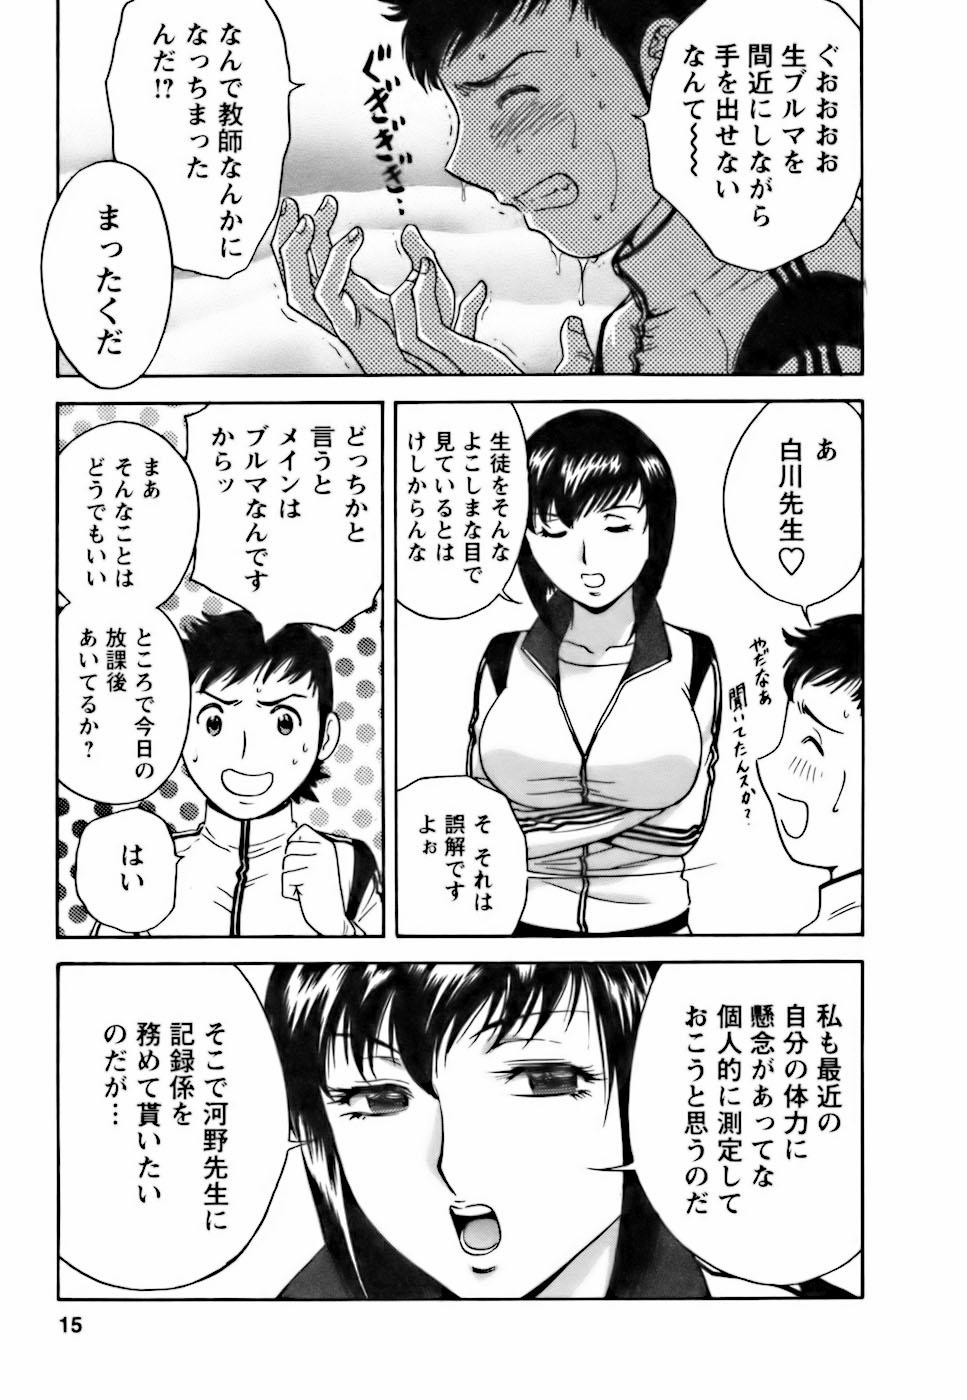 [Hidemaru] Mo-Retsu! Boin Sensei (Boing Boing Teacher) Vol.3 12